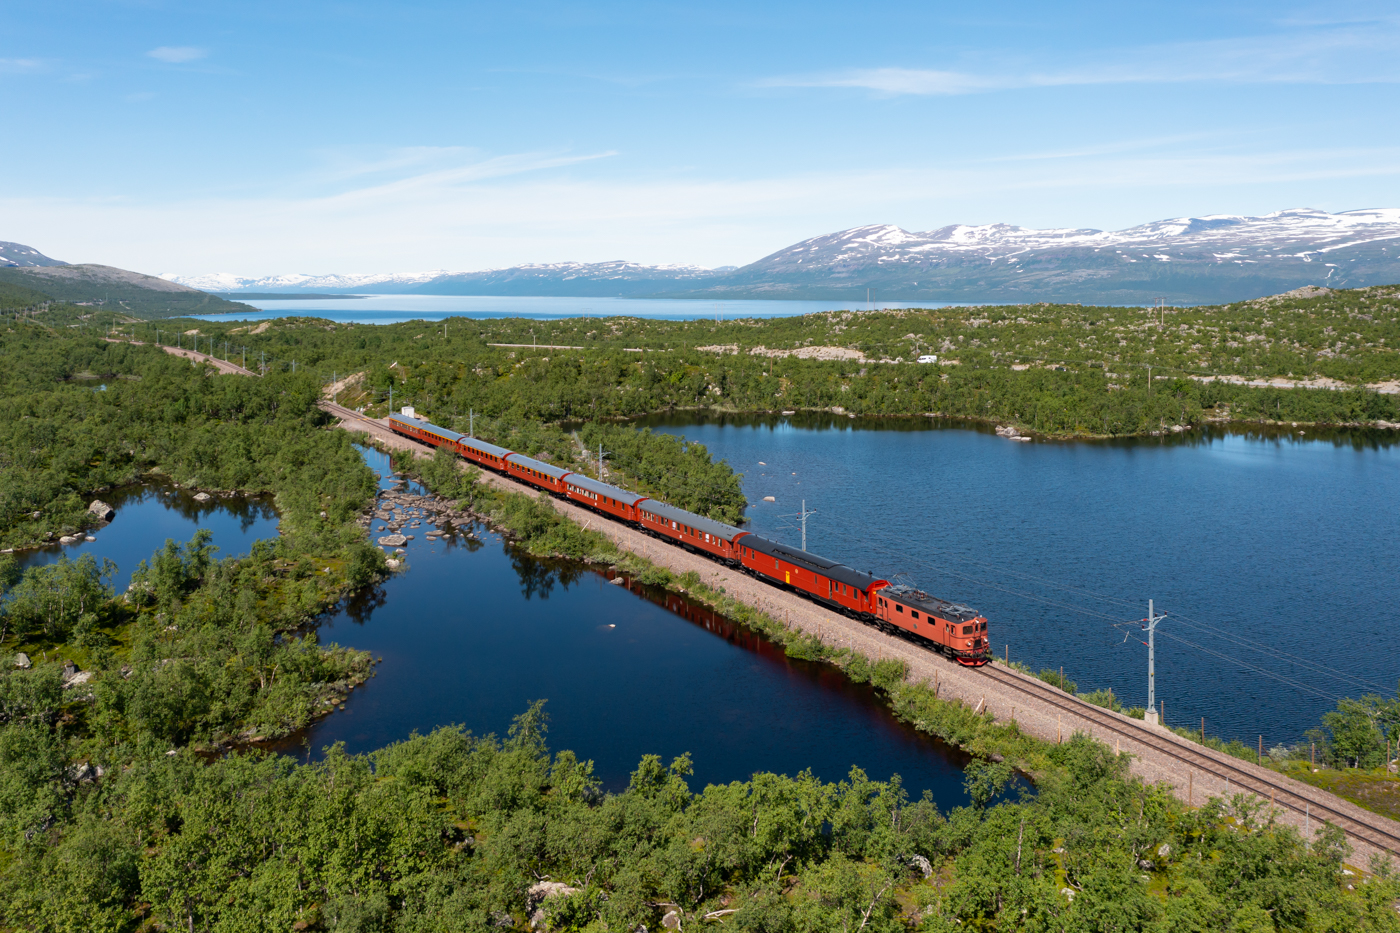 Anfang Juli 2022 gab es anlässlich des Kiruna Festivals ein großes Eisenbahnfest auf der Erzbahn. Es war die letzte Gelegenheit auf dieser Strecke Museumsverkehr zu betreiben, denn die Strecke wird seitdem mit dem neuen Zugsicherungssystem ETCS betrieben. Am 30.06.2022 ist die Da888 aus dem Jahr 1955 mit einem historischen Schnellzug auf dem Weg von Abisko entlang des Sees Torneträsk zurück nach Kiruna. In wenigen Minuten wird der Betriebsbahnhof Stenbacken erreicht.